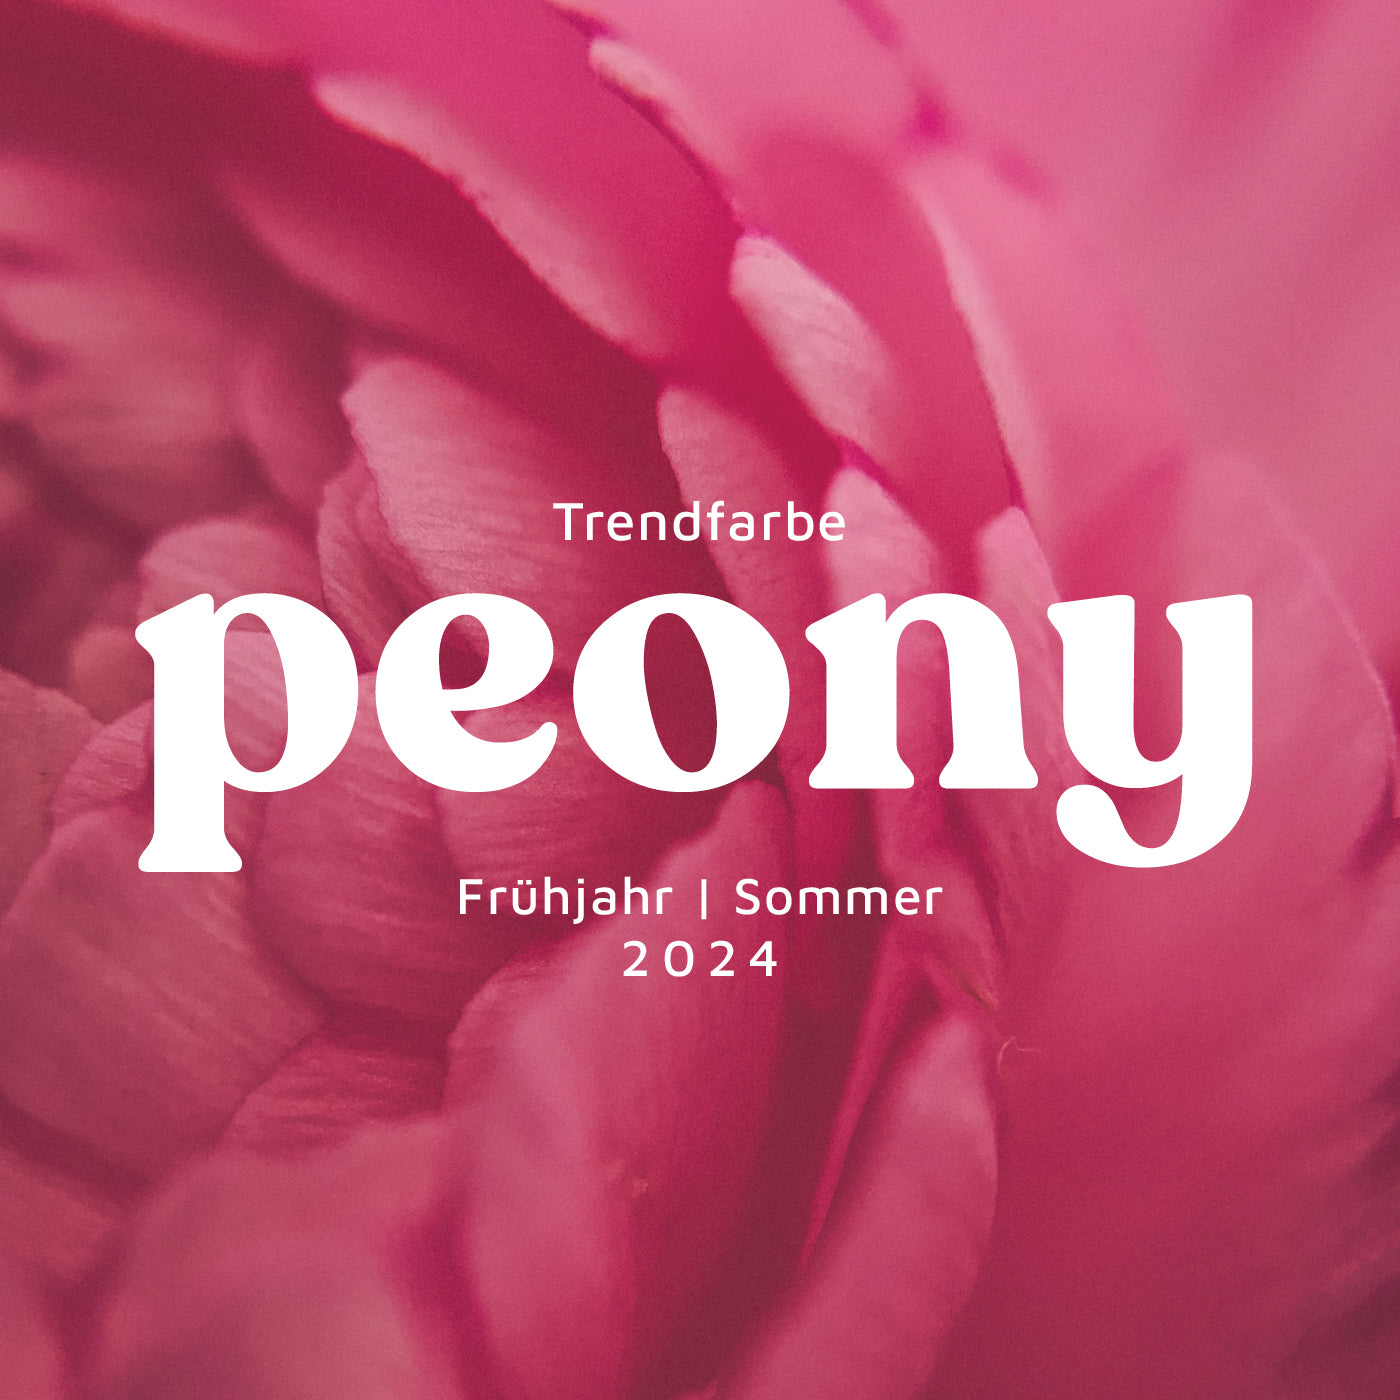 Blütenzauber im Kleiderschrank: Peony-Pink erblüht im Frühjahr/Sommer 2024! 🌸💕